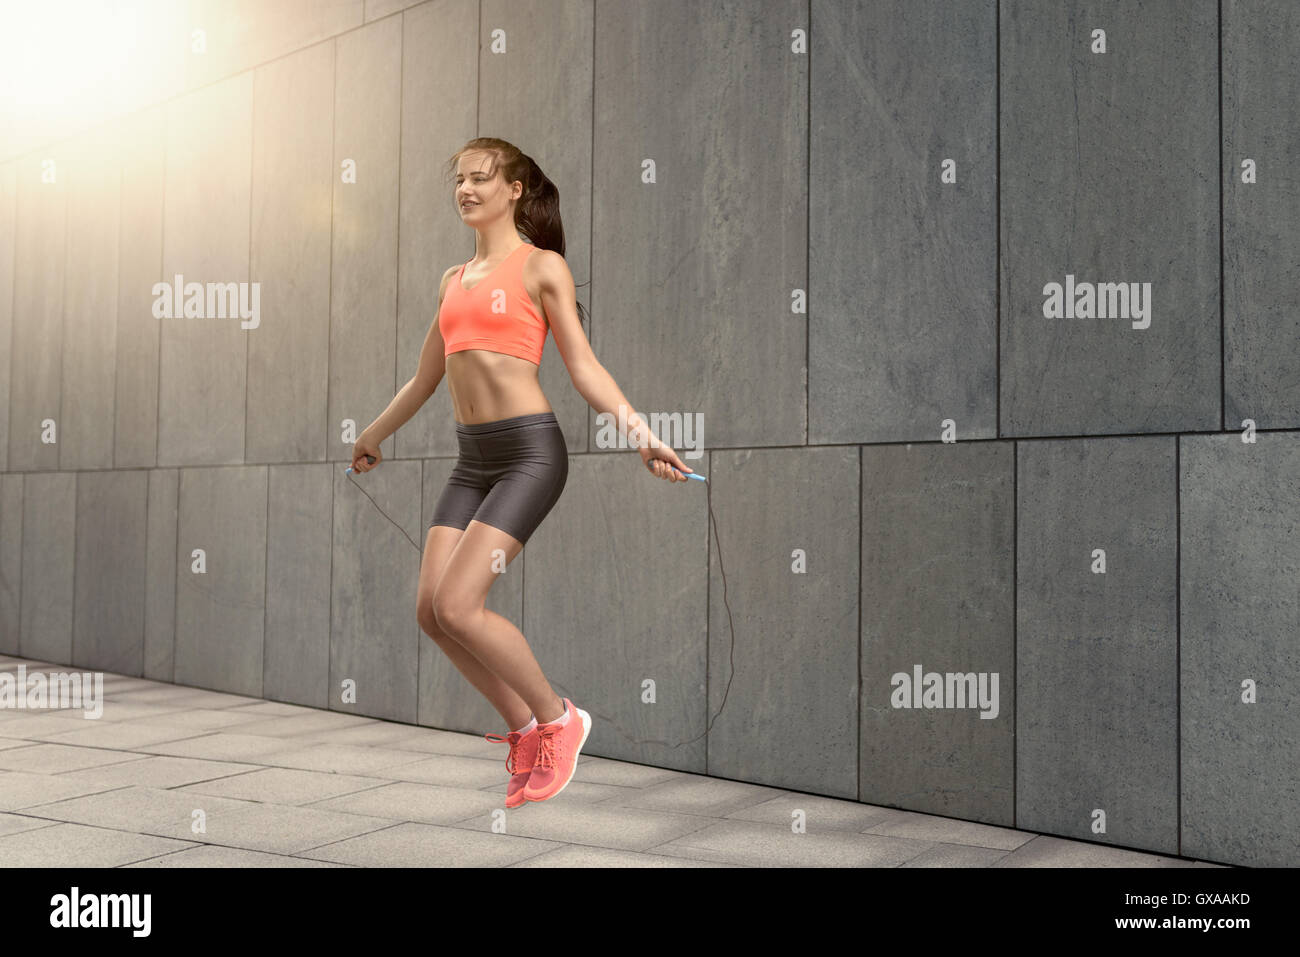 Fit lächelnd sportliche junge Frau in Shorts und Top Seilspringen außerhalb über Stein Boden blockieren Stockfoto